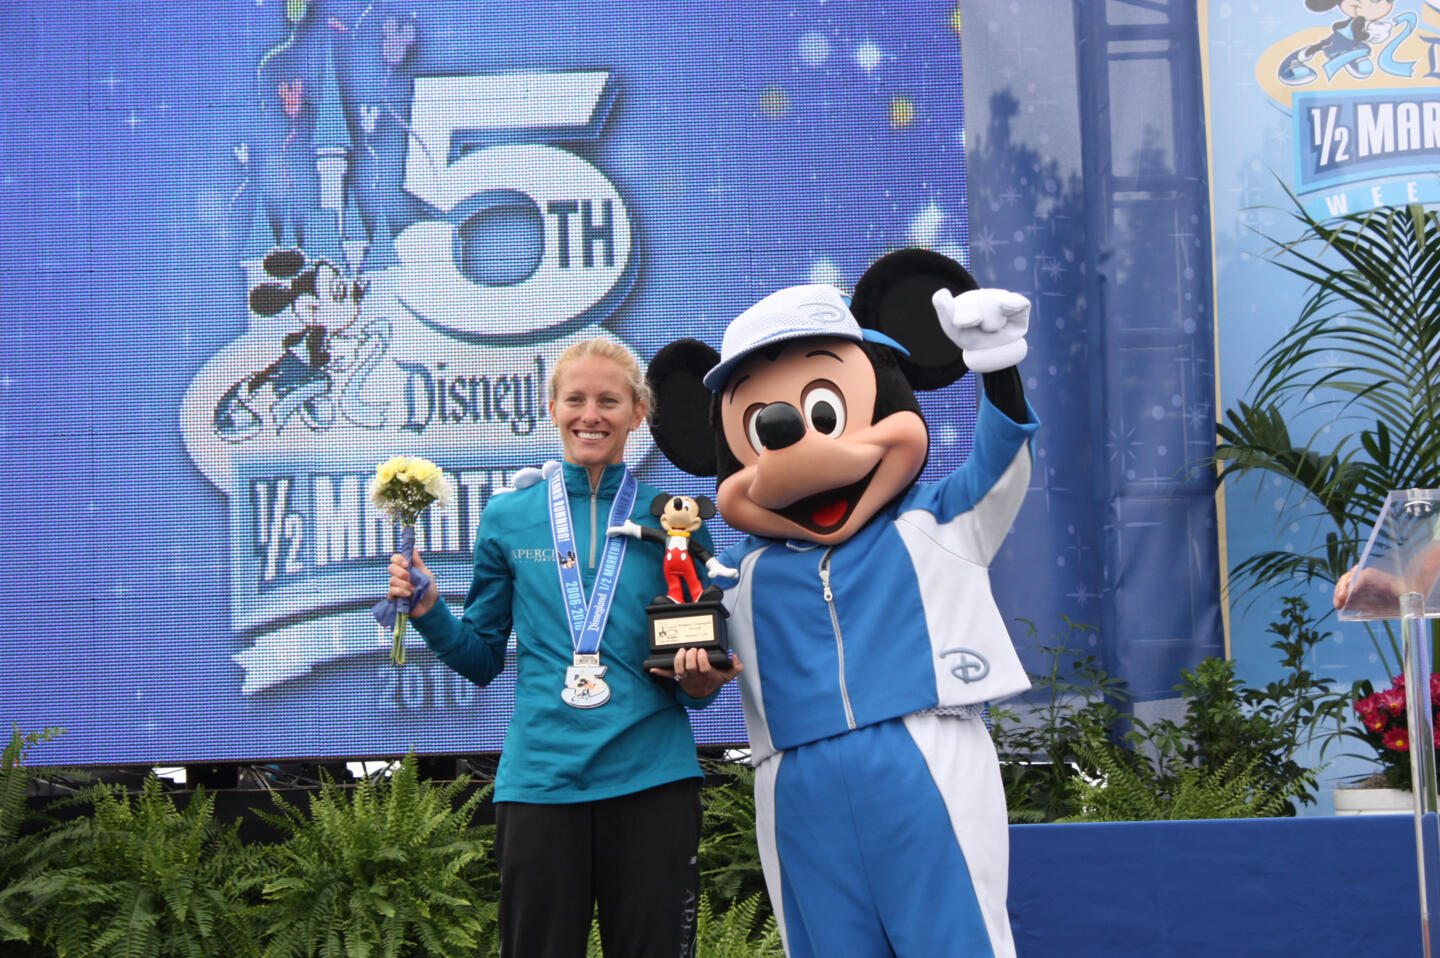 Une coureuse gagnante tenant un trophée et un bouquet de fleurs sur scène, accompagnée de Mickey Mouse en tenue sportive, lors de la 5ème édition du Disney 1/2 Marathon.